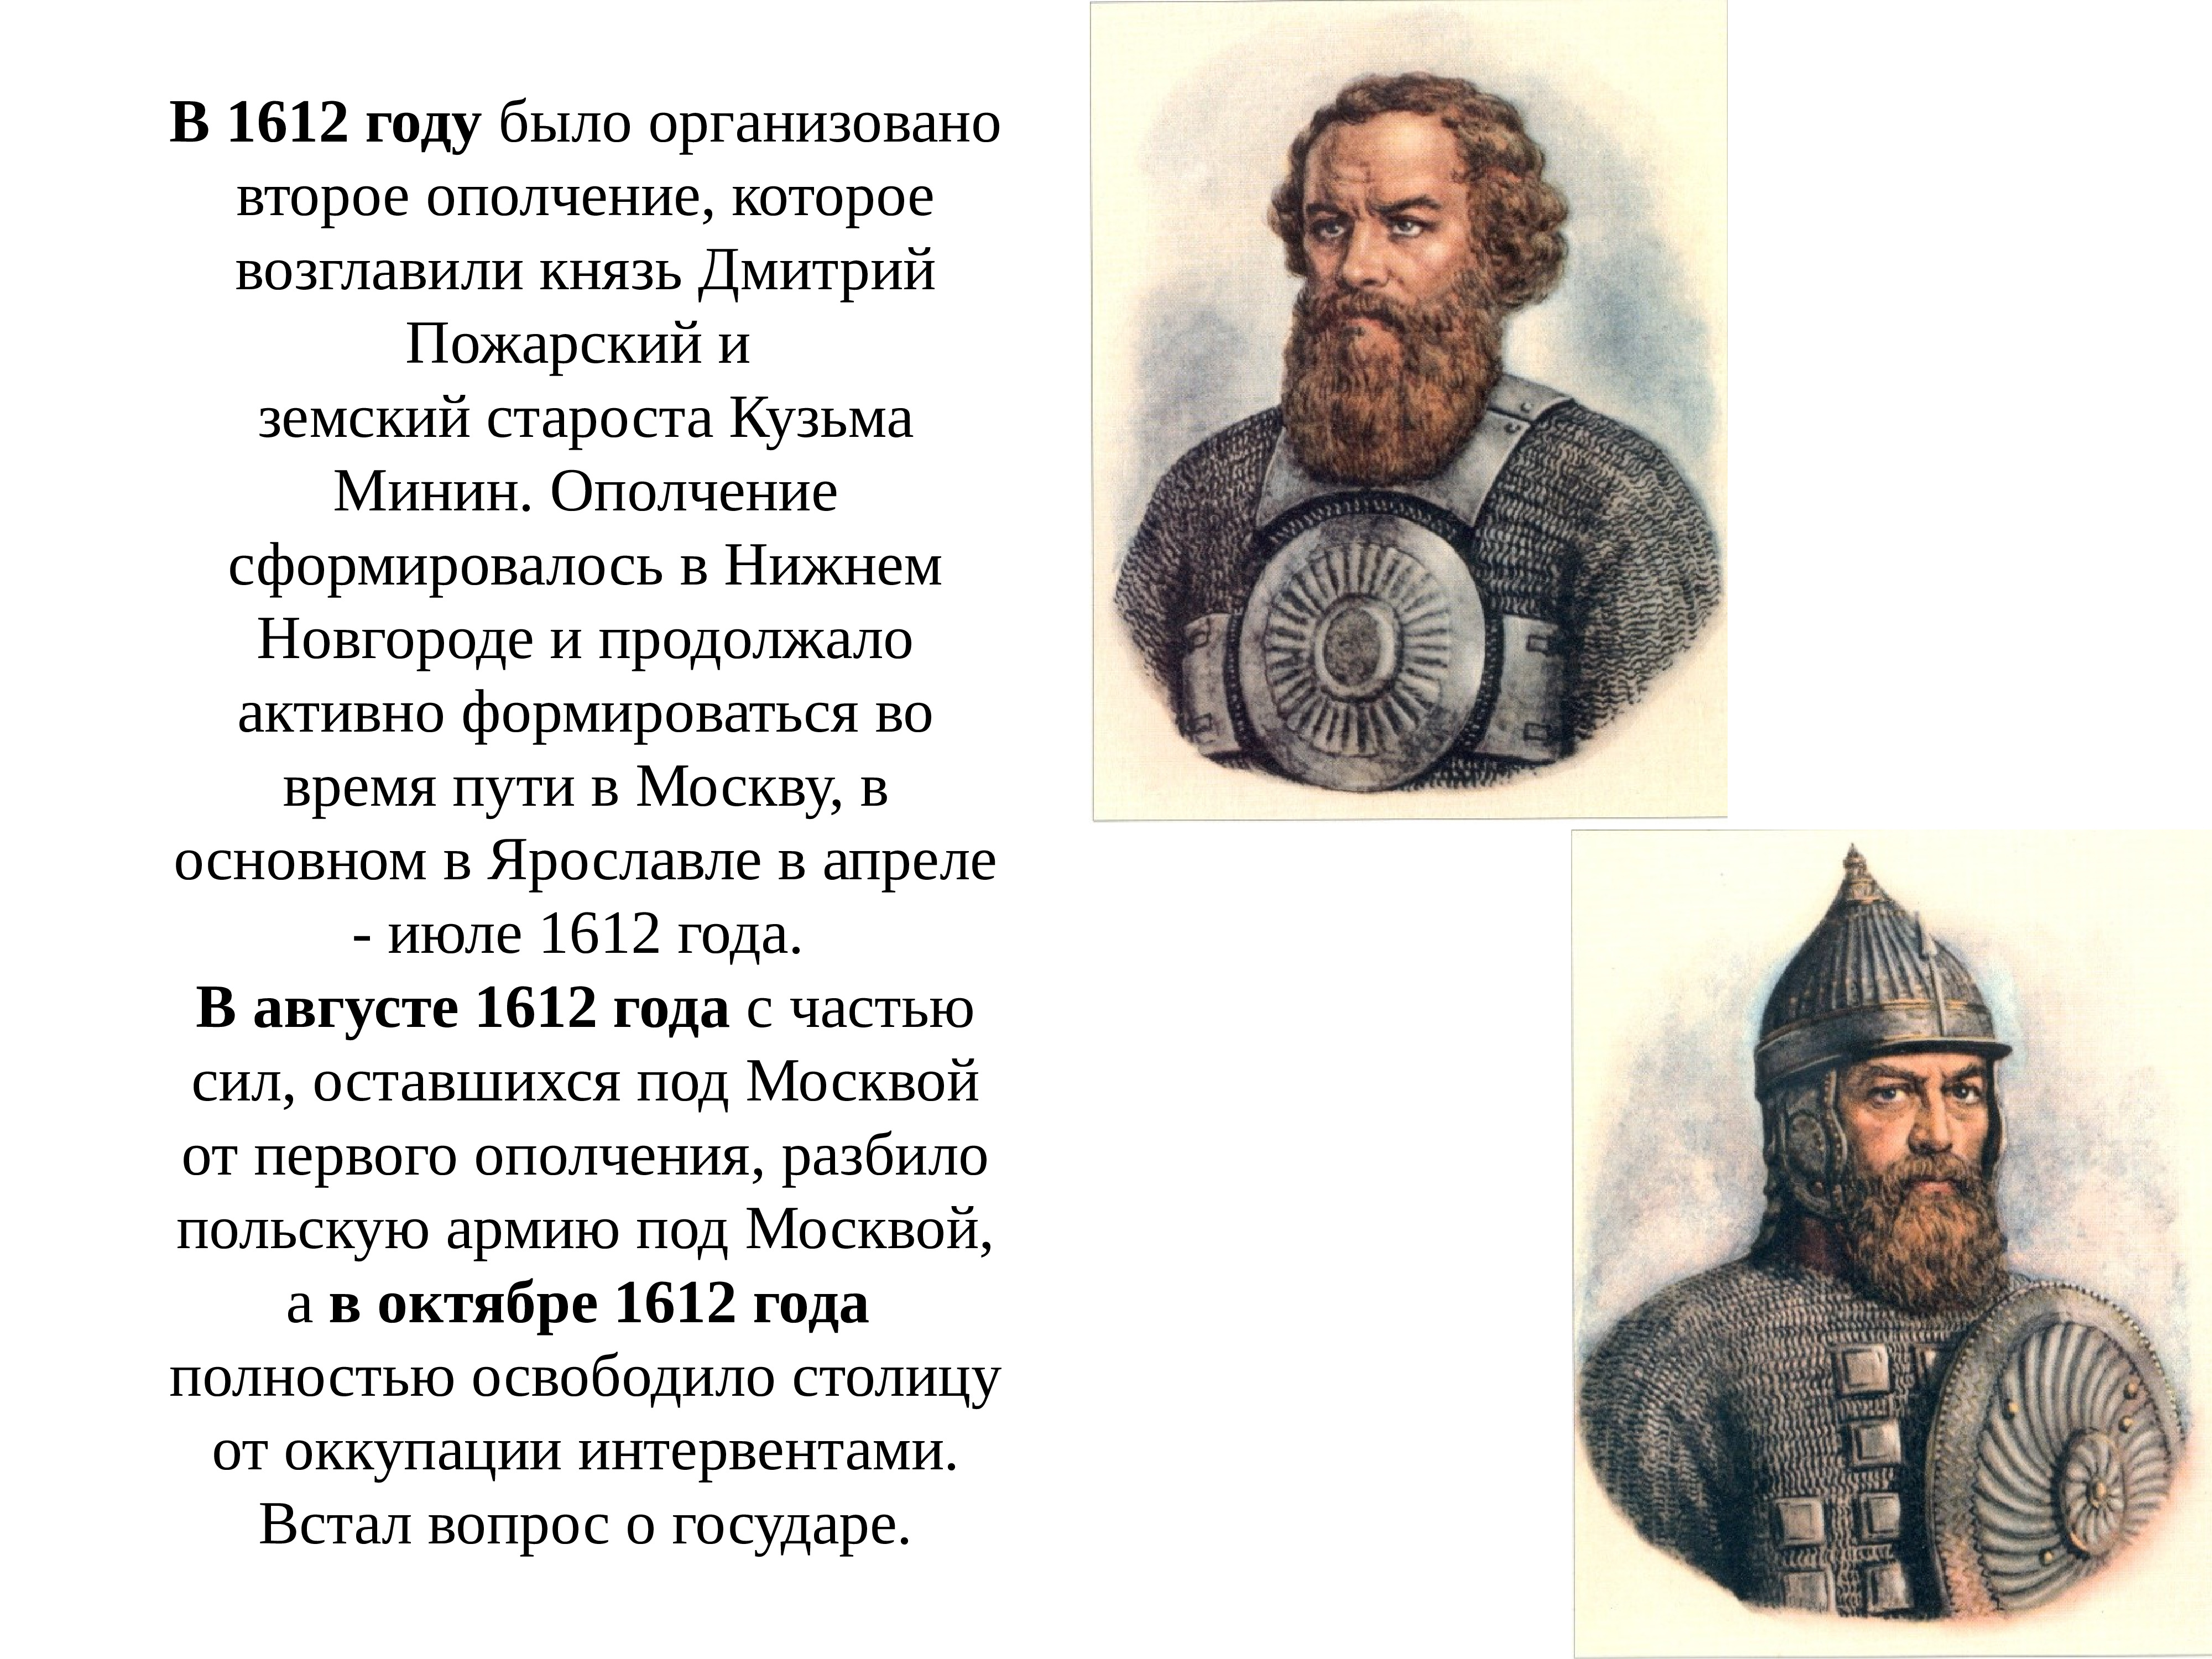 1612 событие в истории. Ополчение 1612 года Минин и Пожарский. 1612 Год Минин и Пожарский кратко.